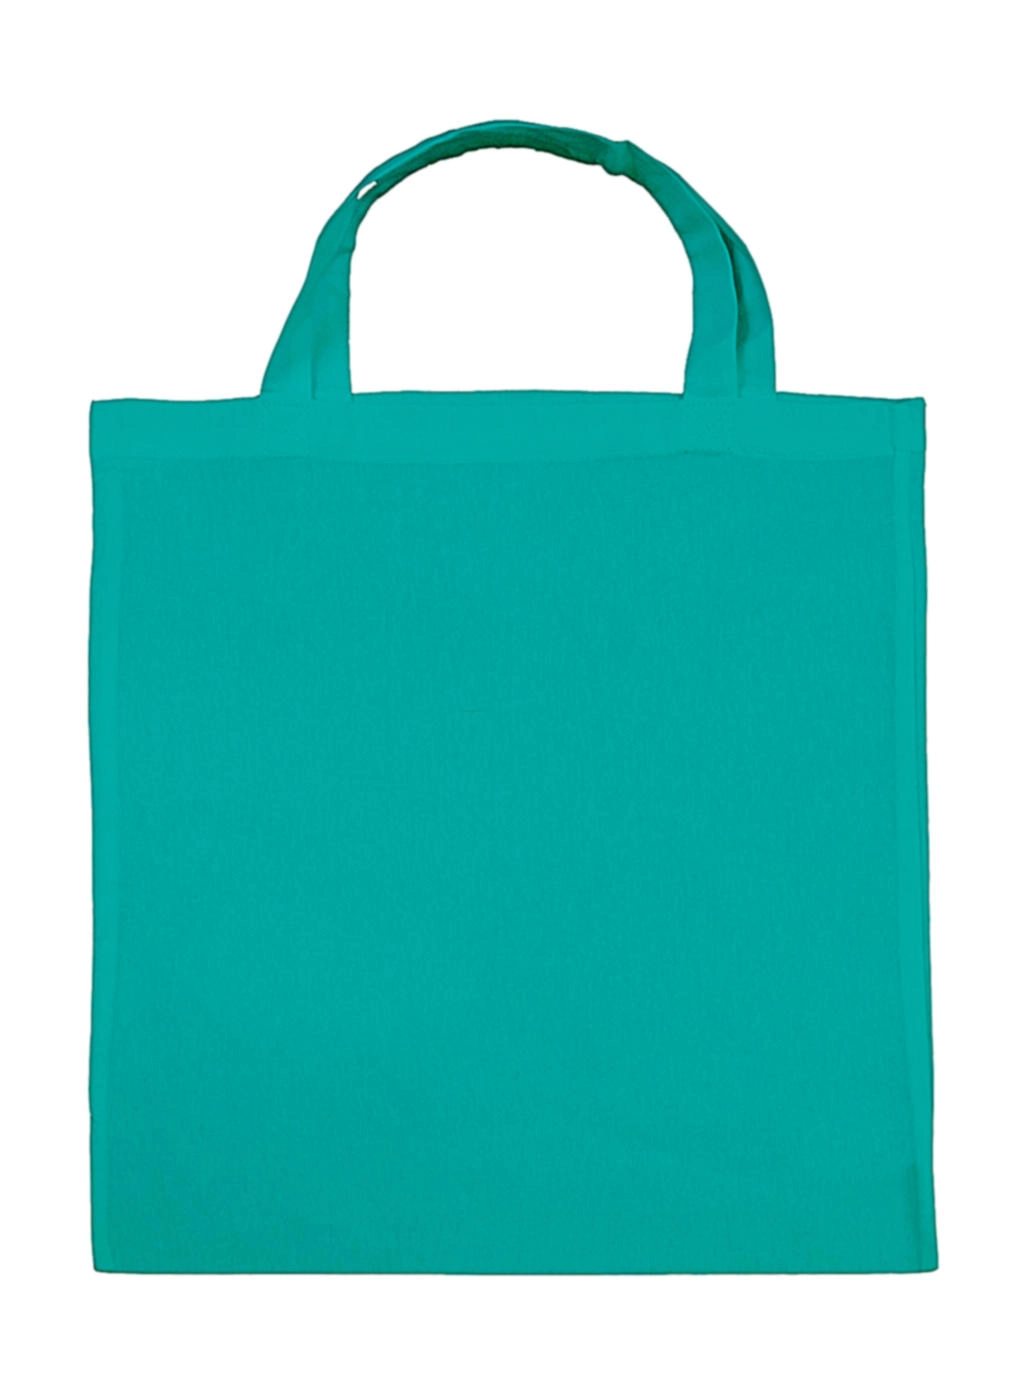 Cotton Shopper SH zum Besticken und Bedrucken in der Farbe Turquoise mit Ihren Logo, Schriftzug oder Motiv.